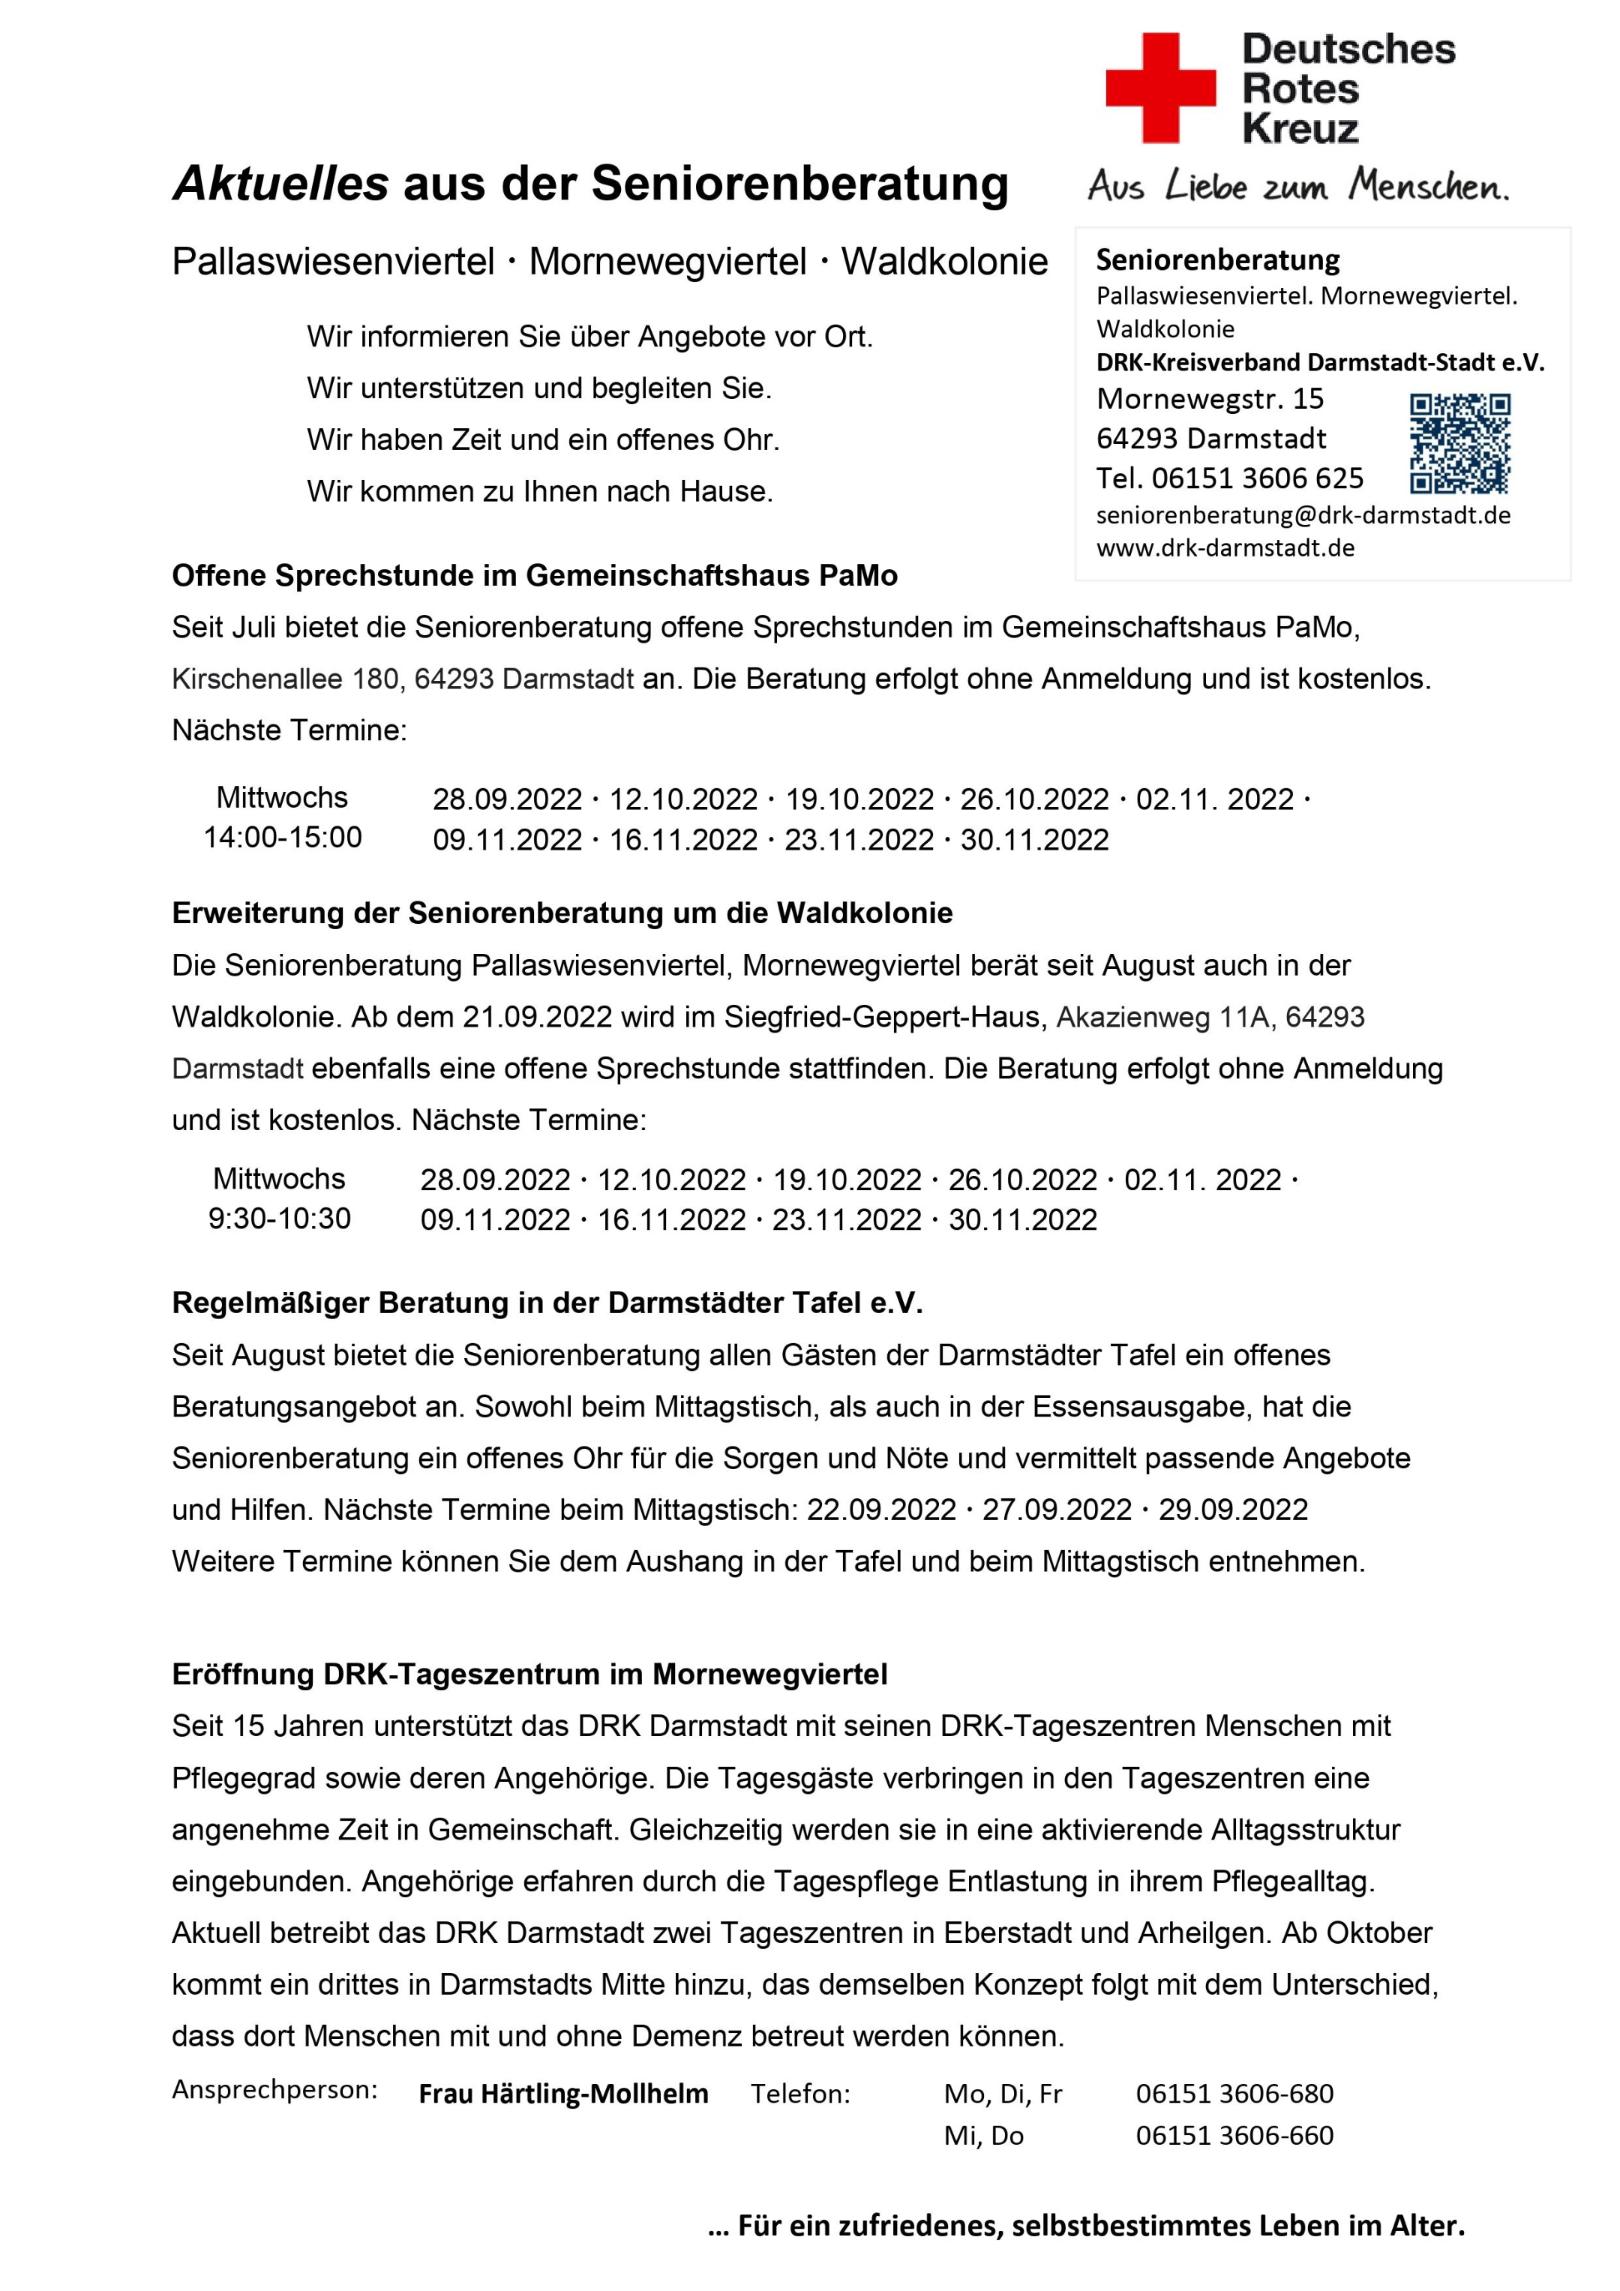 newsletter-2022_1 (c) Deutsches Rotes Kreuz